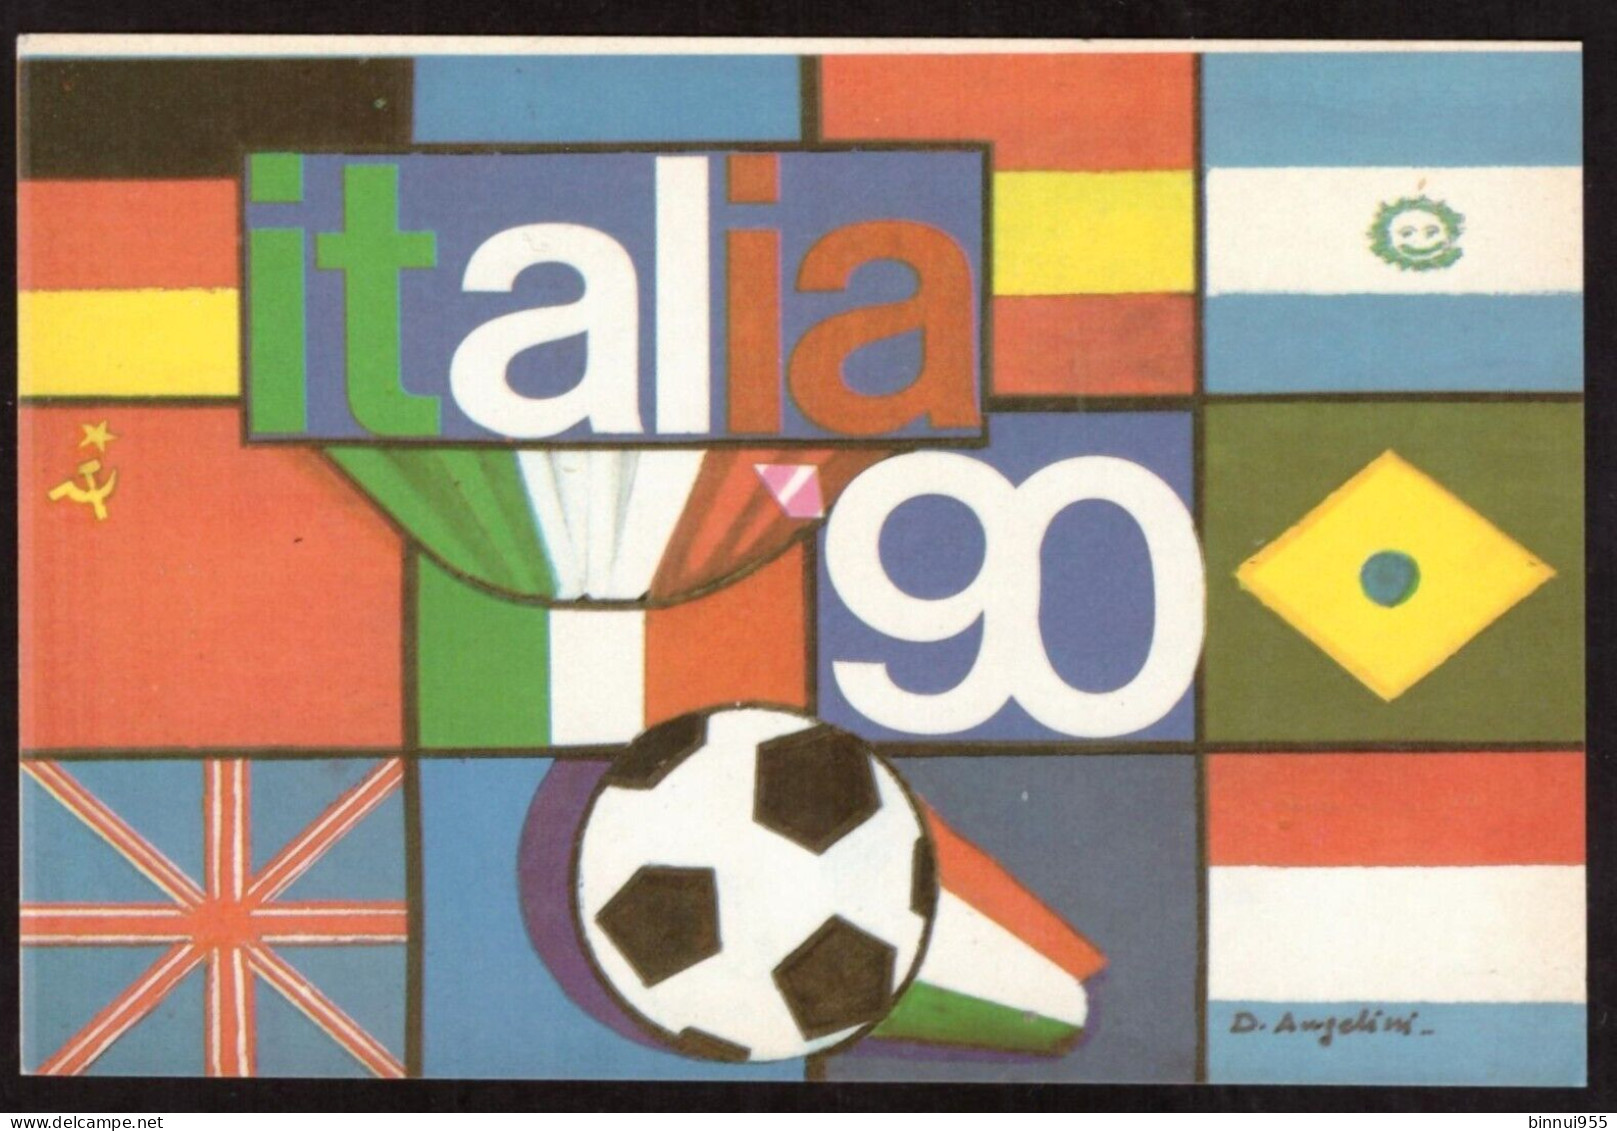 Cartolina Autoadesiva Italia 90 Campionati Di Calcio Non Viaggiata - Fussball